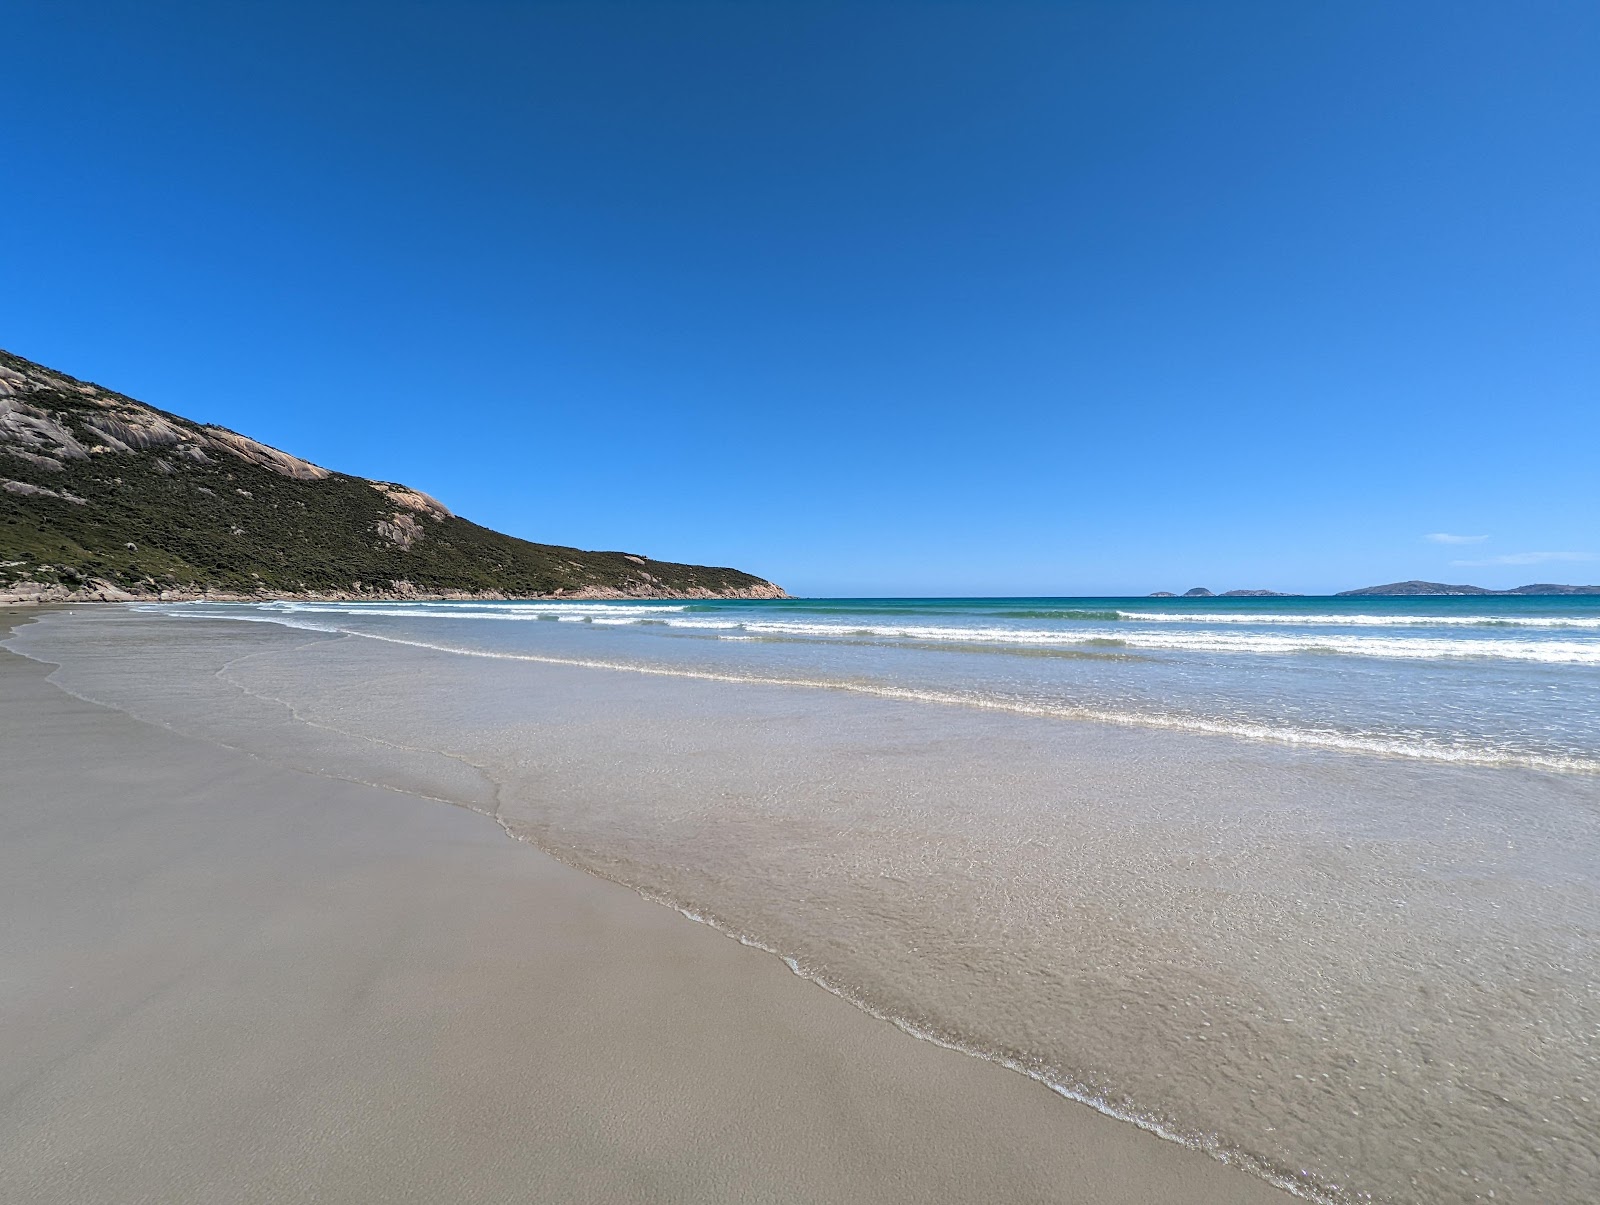 Foto di Norman Beach con una superficie del sabbia fine e luminosa